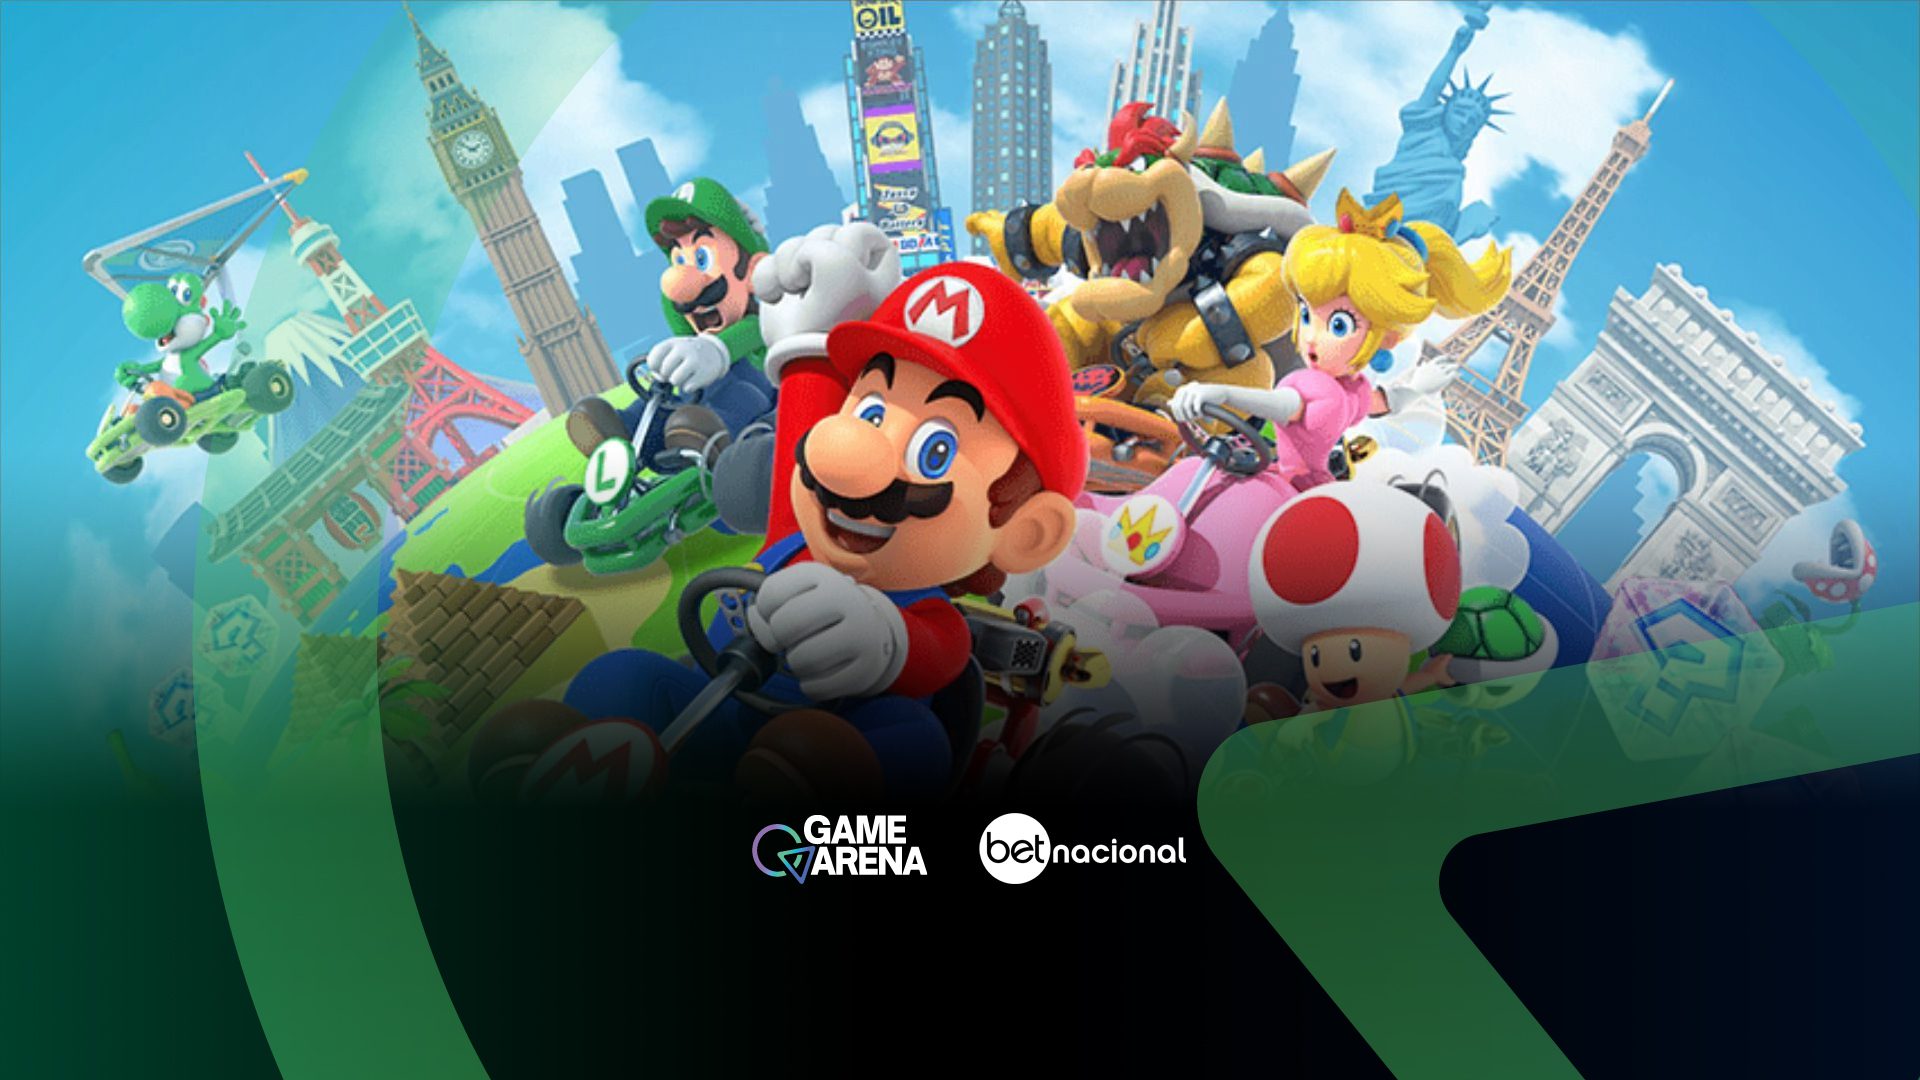 Nintendo é processada por vendas in-game no jogo Mario Kart Tour